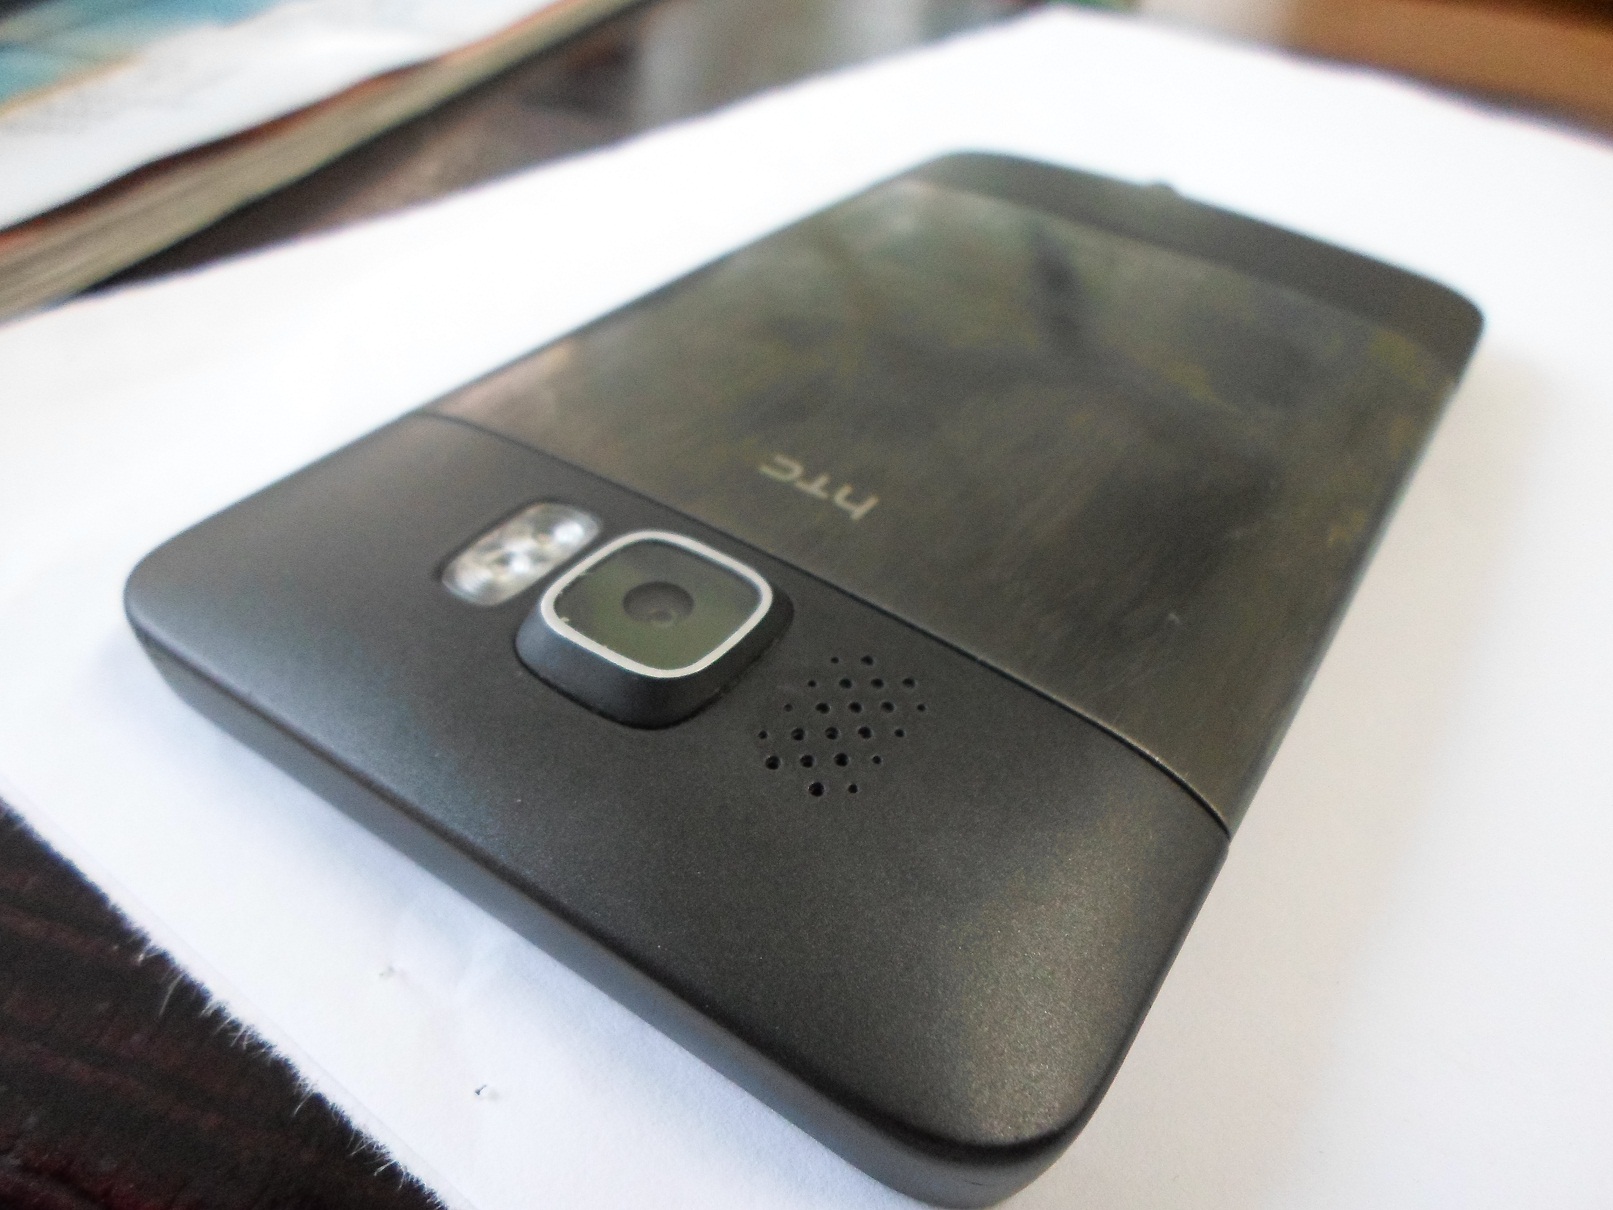  HTC HD2 Leo Tertemiz Android 470 tl